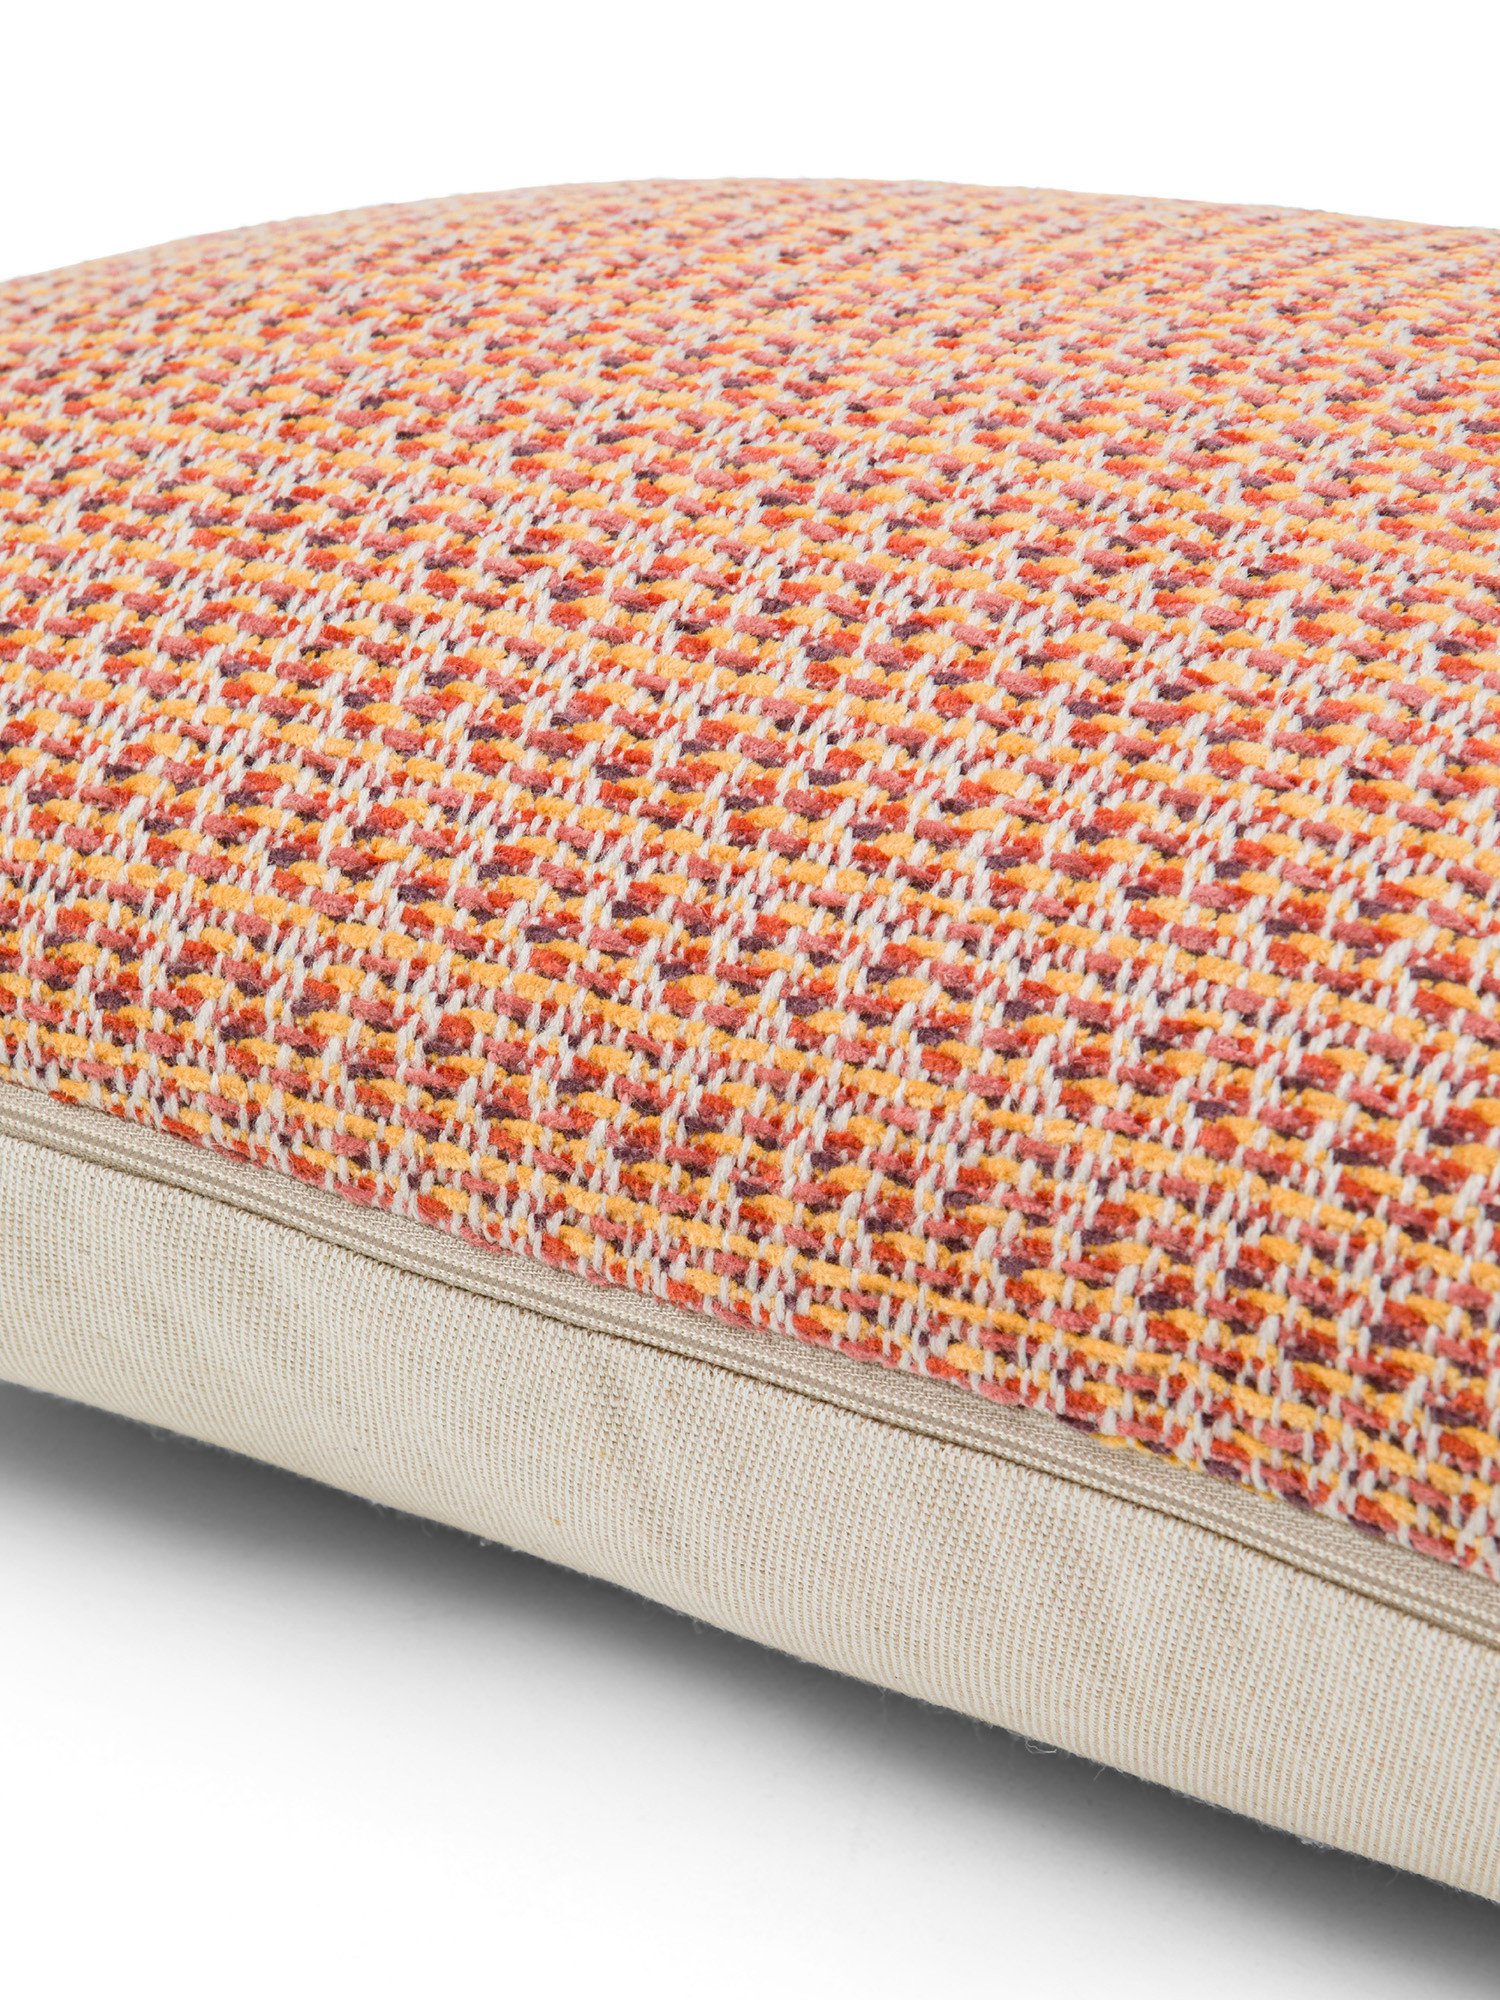 Jacquard knitted cushion with fringes 35X55cm, Orange, large image number 2